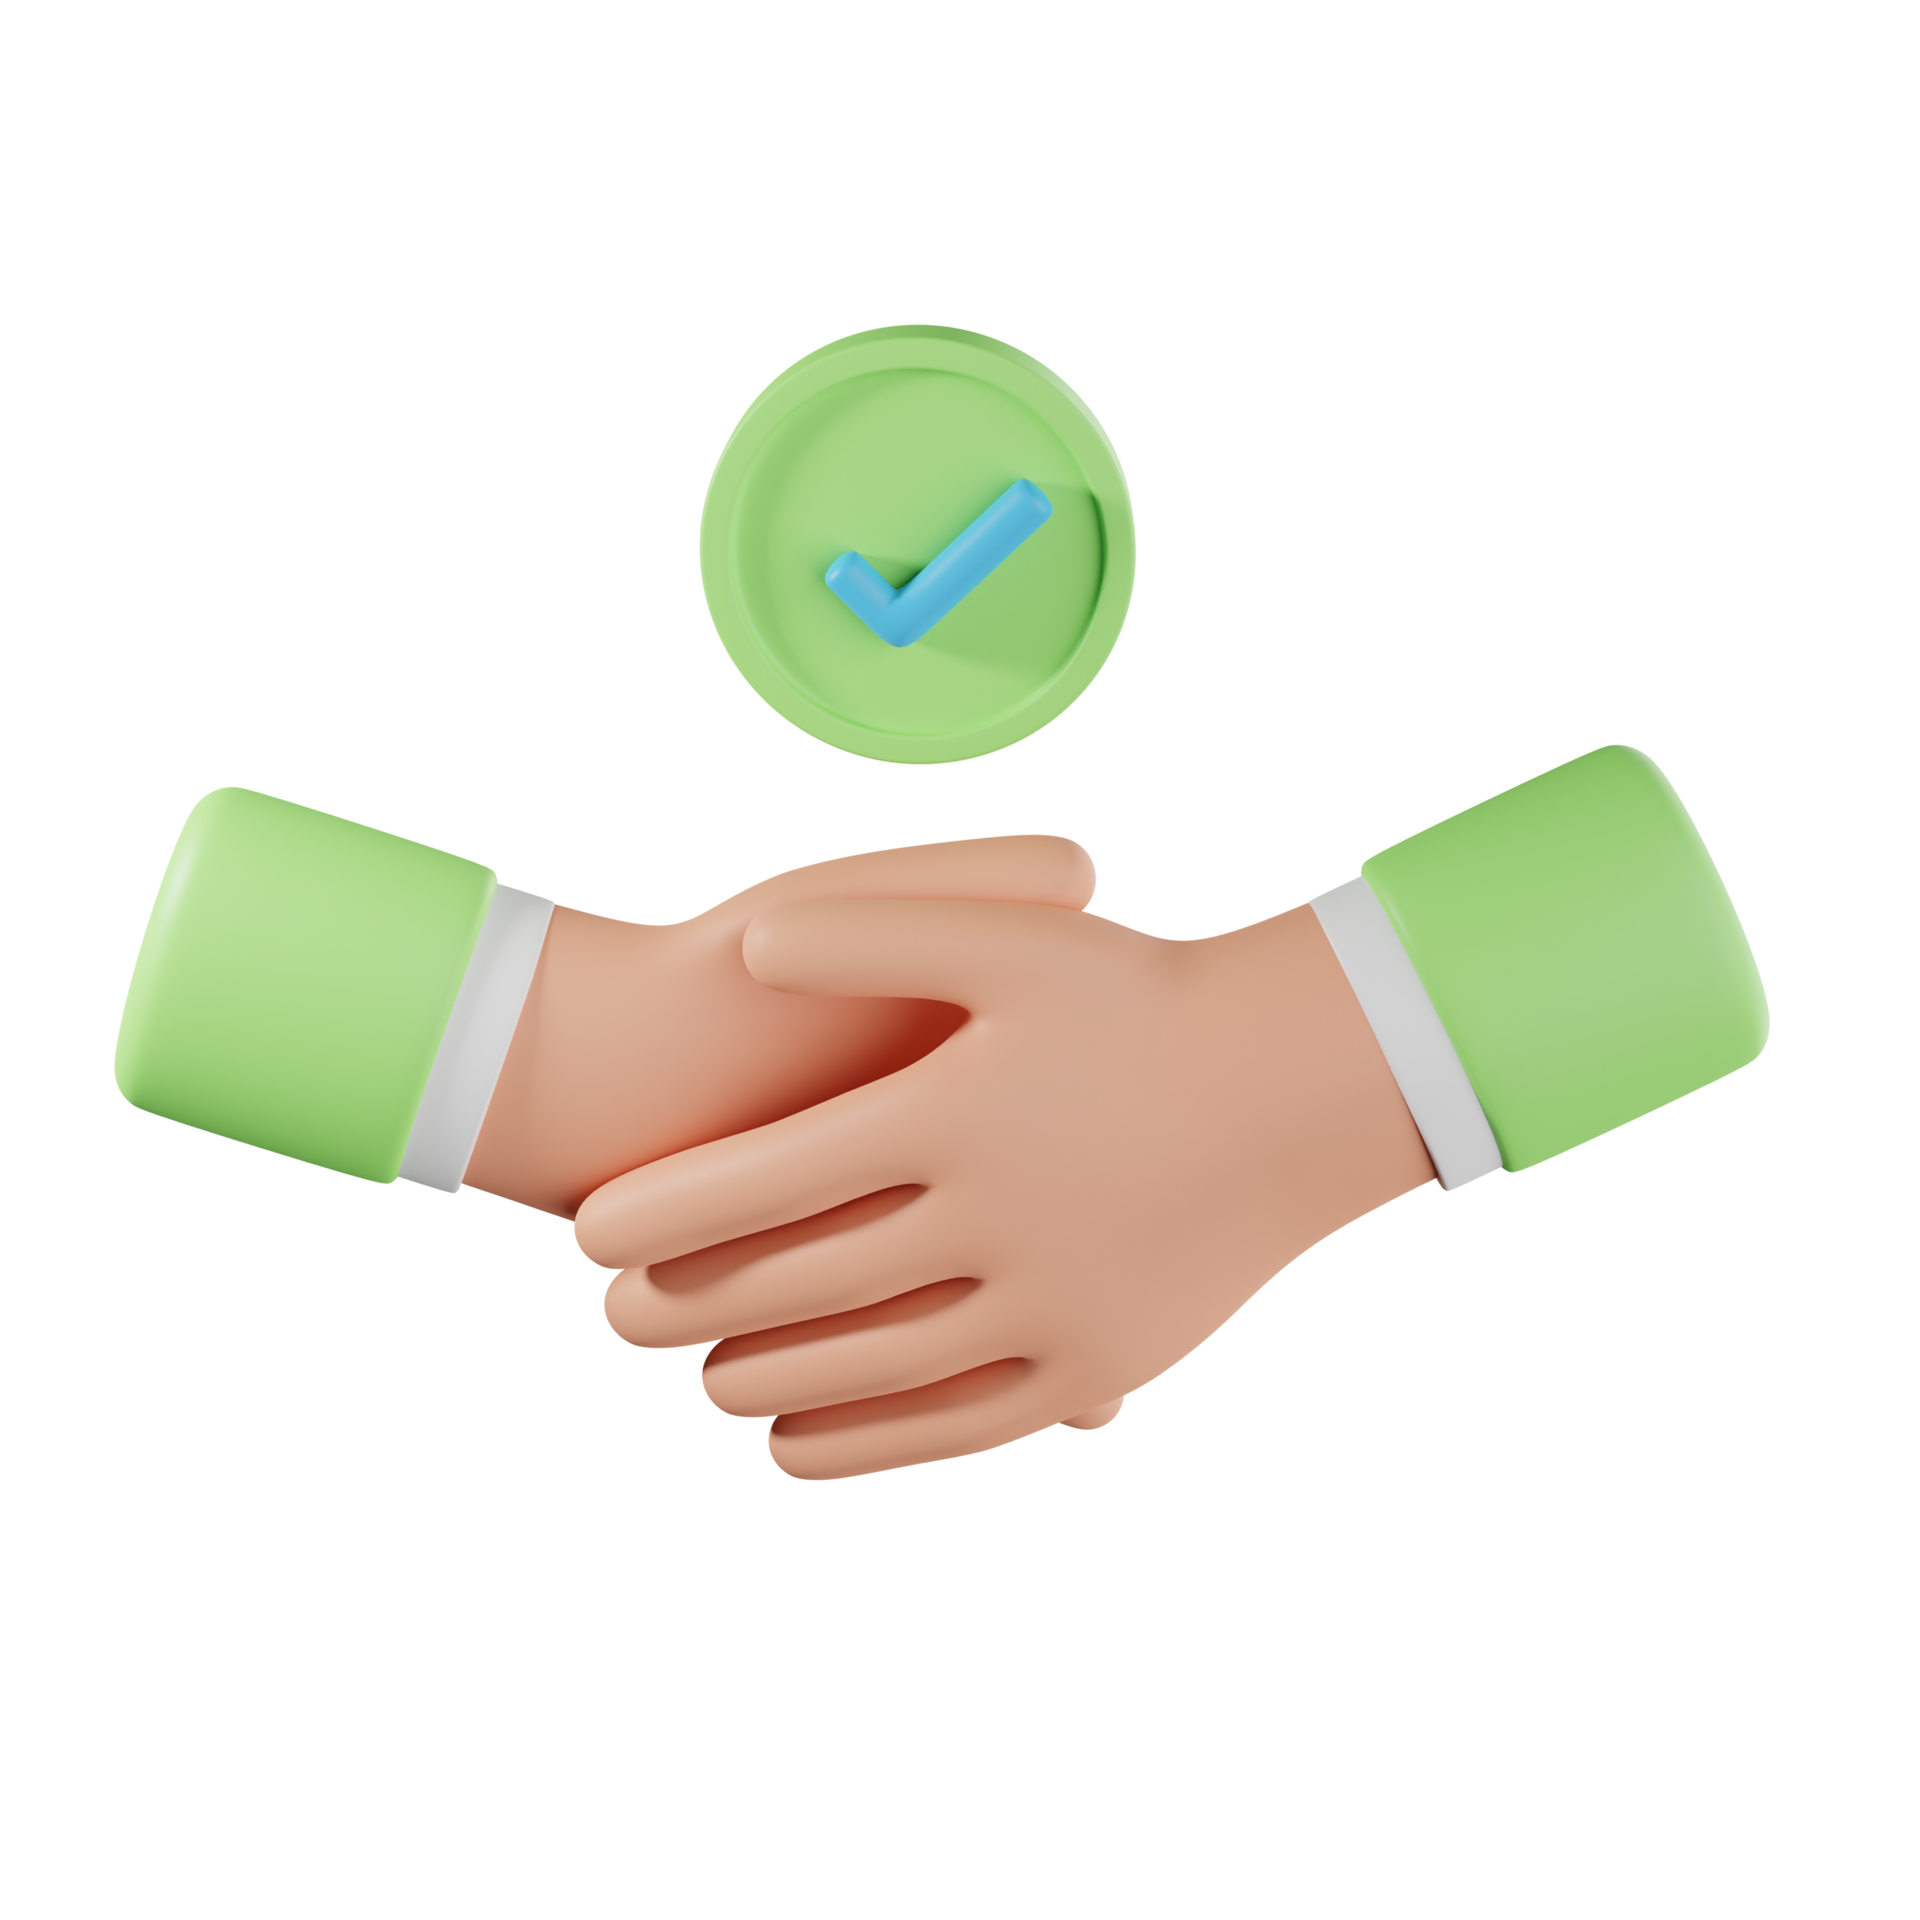 3d hands business handshake emoji on white background. Partnership and  agreement symbol. 3d illustration. Stock Illustration